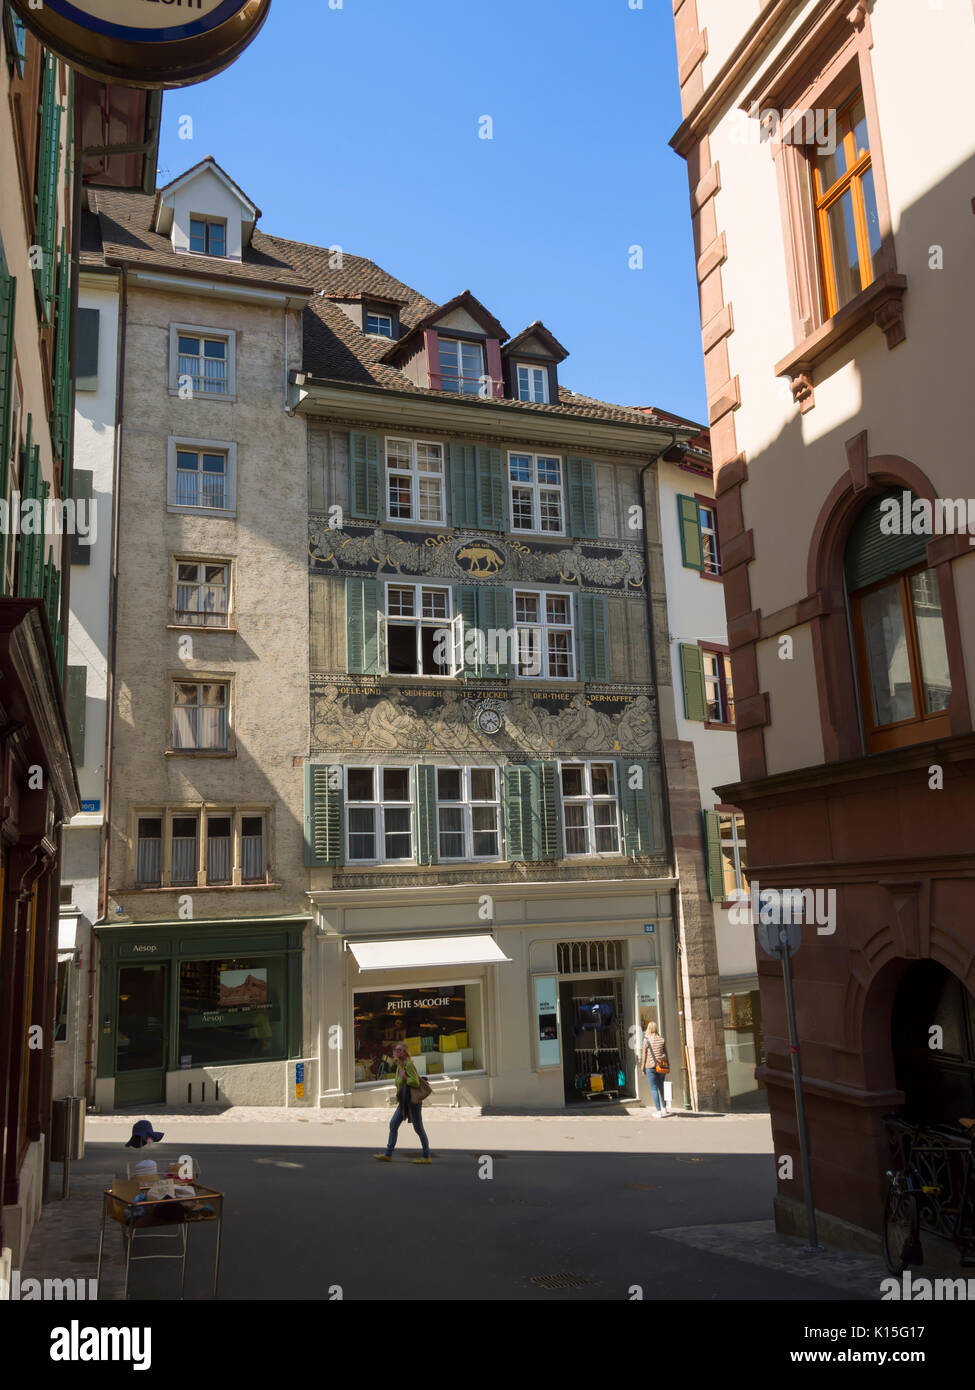 Vieille ville de Bâle, Suisse. Vue d'un bâtiment sur Spalenberg qui était autrefois une épices, sucre, thé et café. Banque D'Images